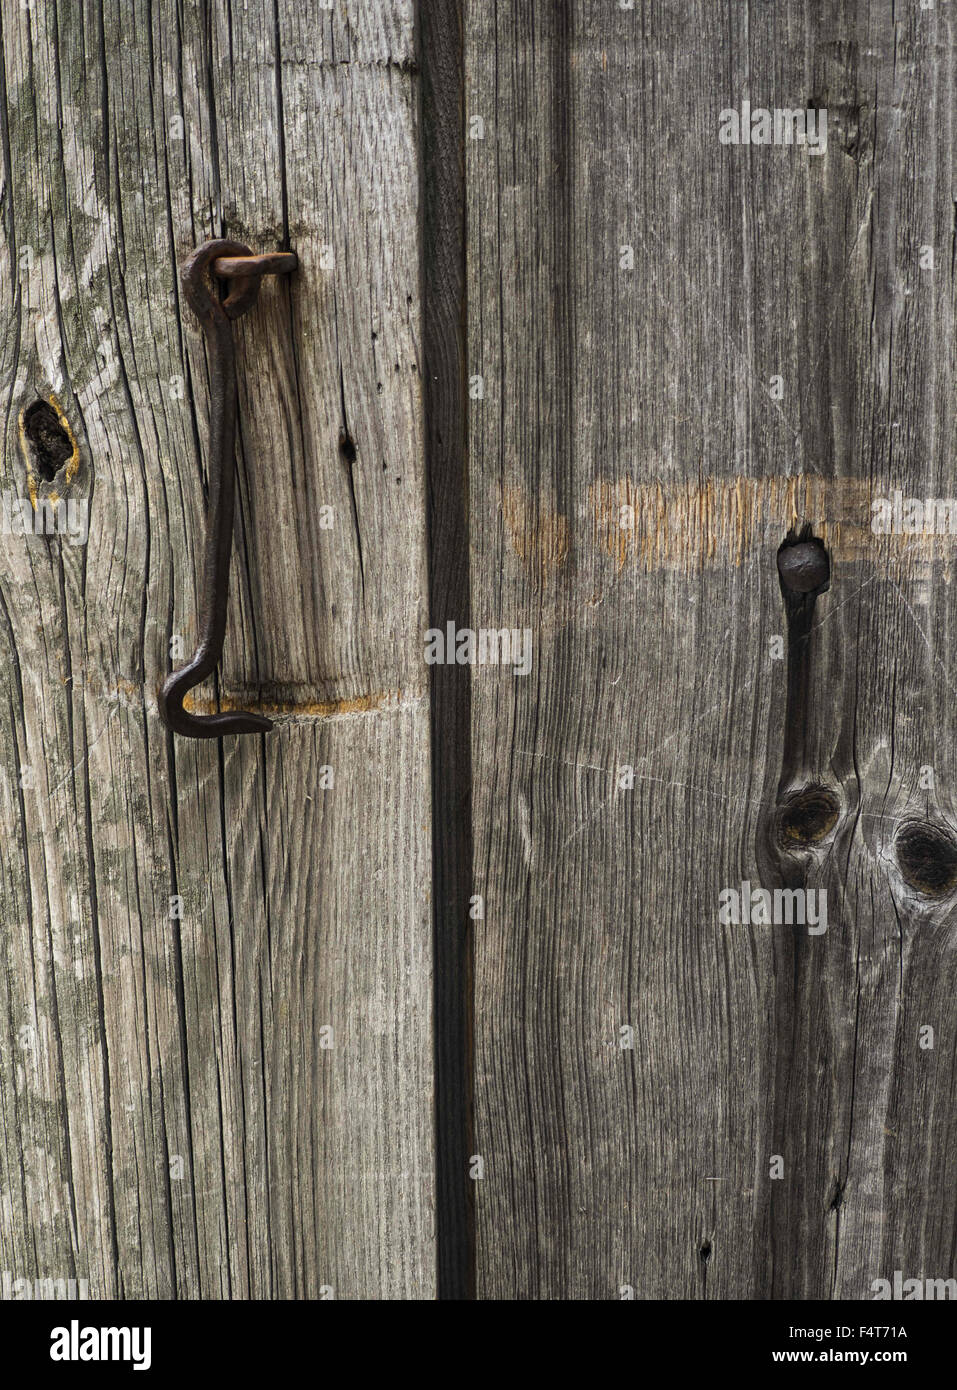 14 octobre 2015 - crochet sur une vieille porte en bois (Image Crédit : © Igor Goiovniov via Zuma sur le fil) Banque D'Images